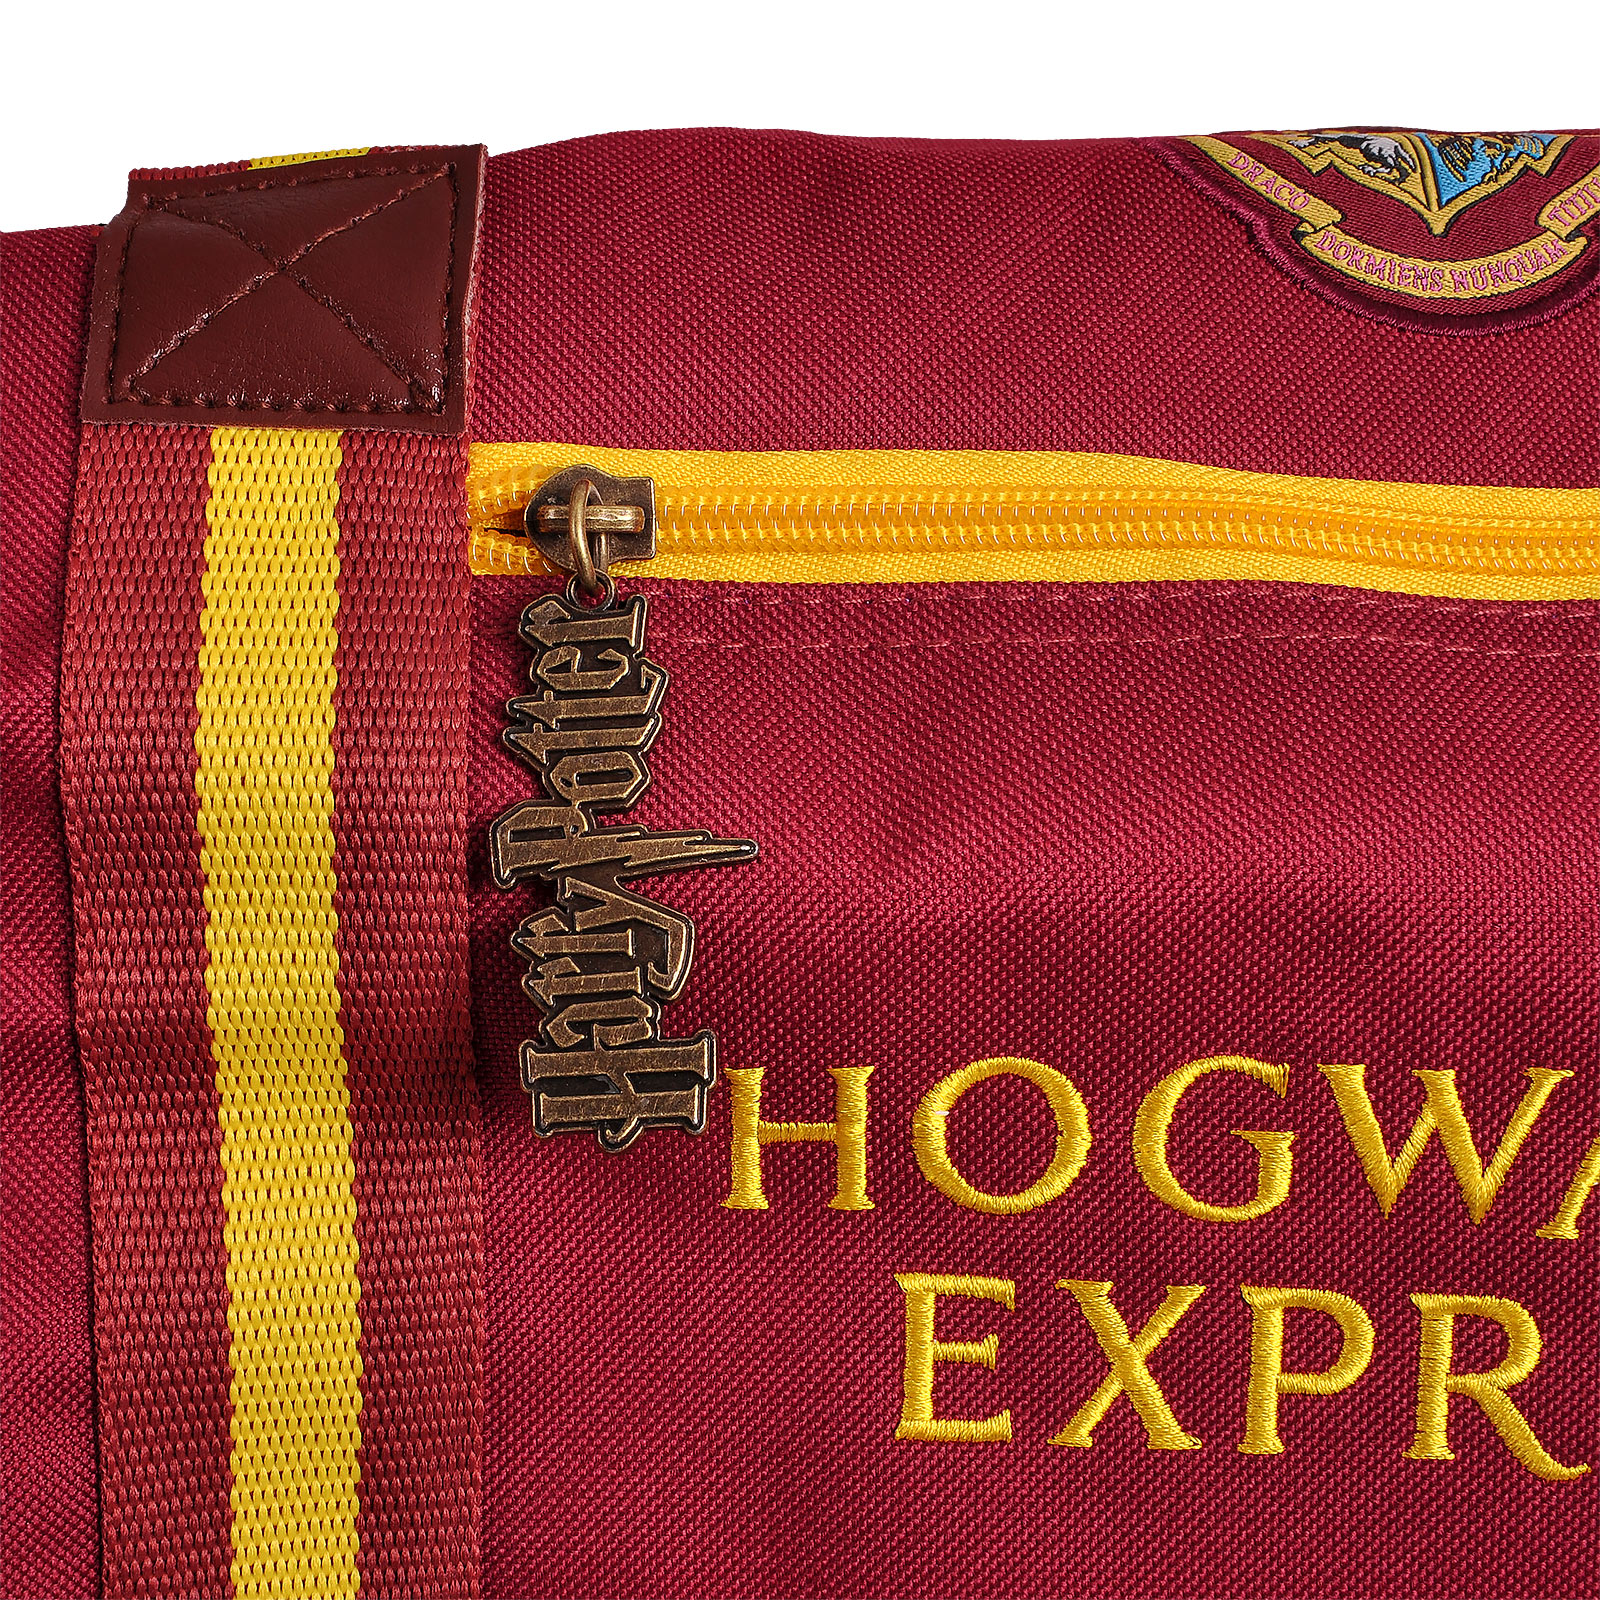 Harry Potter - Hogwarts Express 9 3/4 Travel Bag